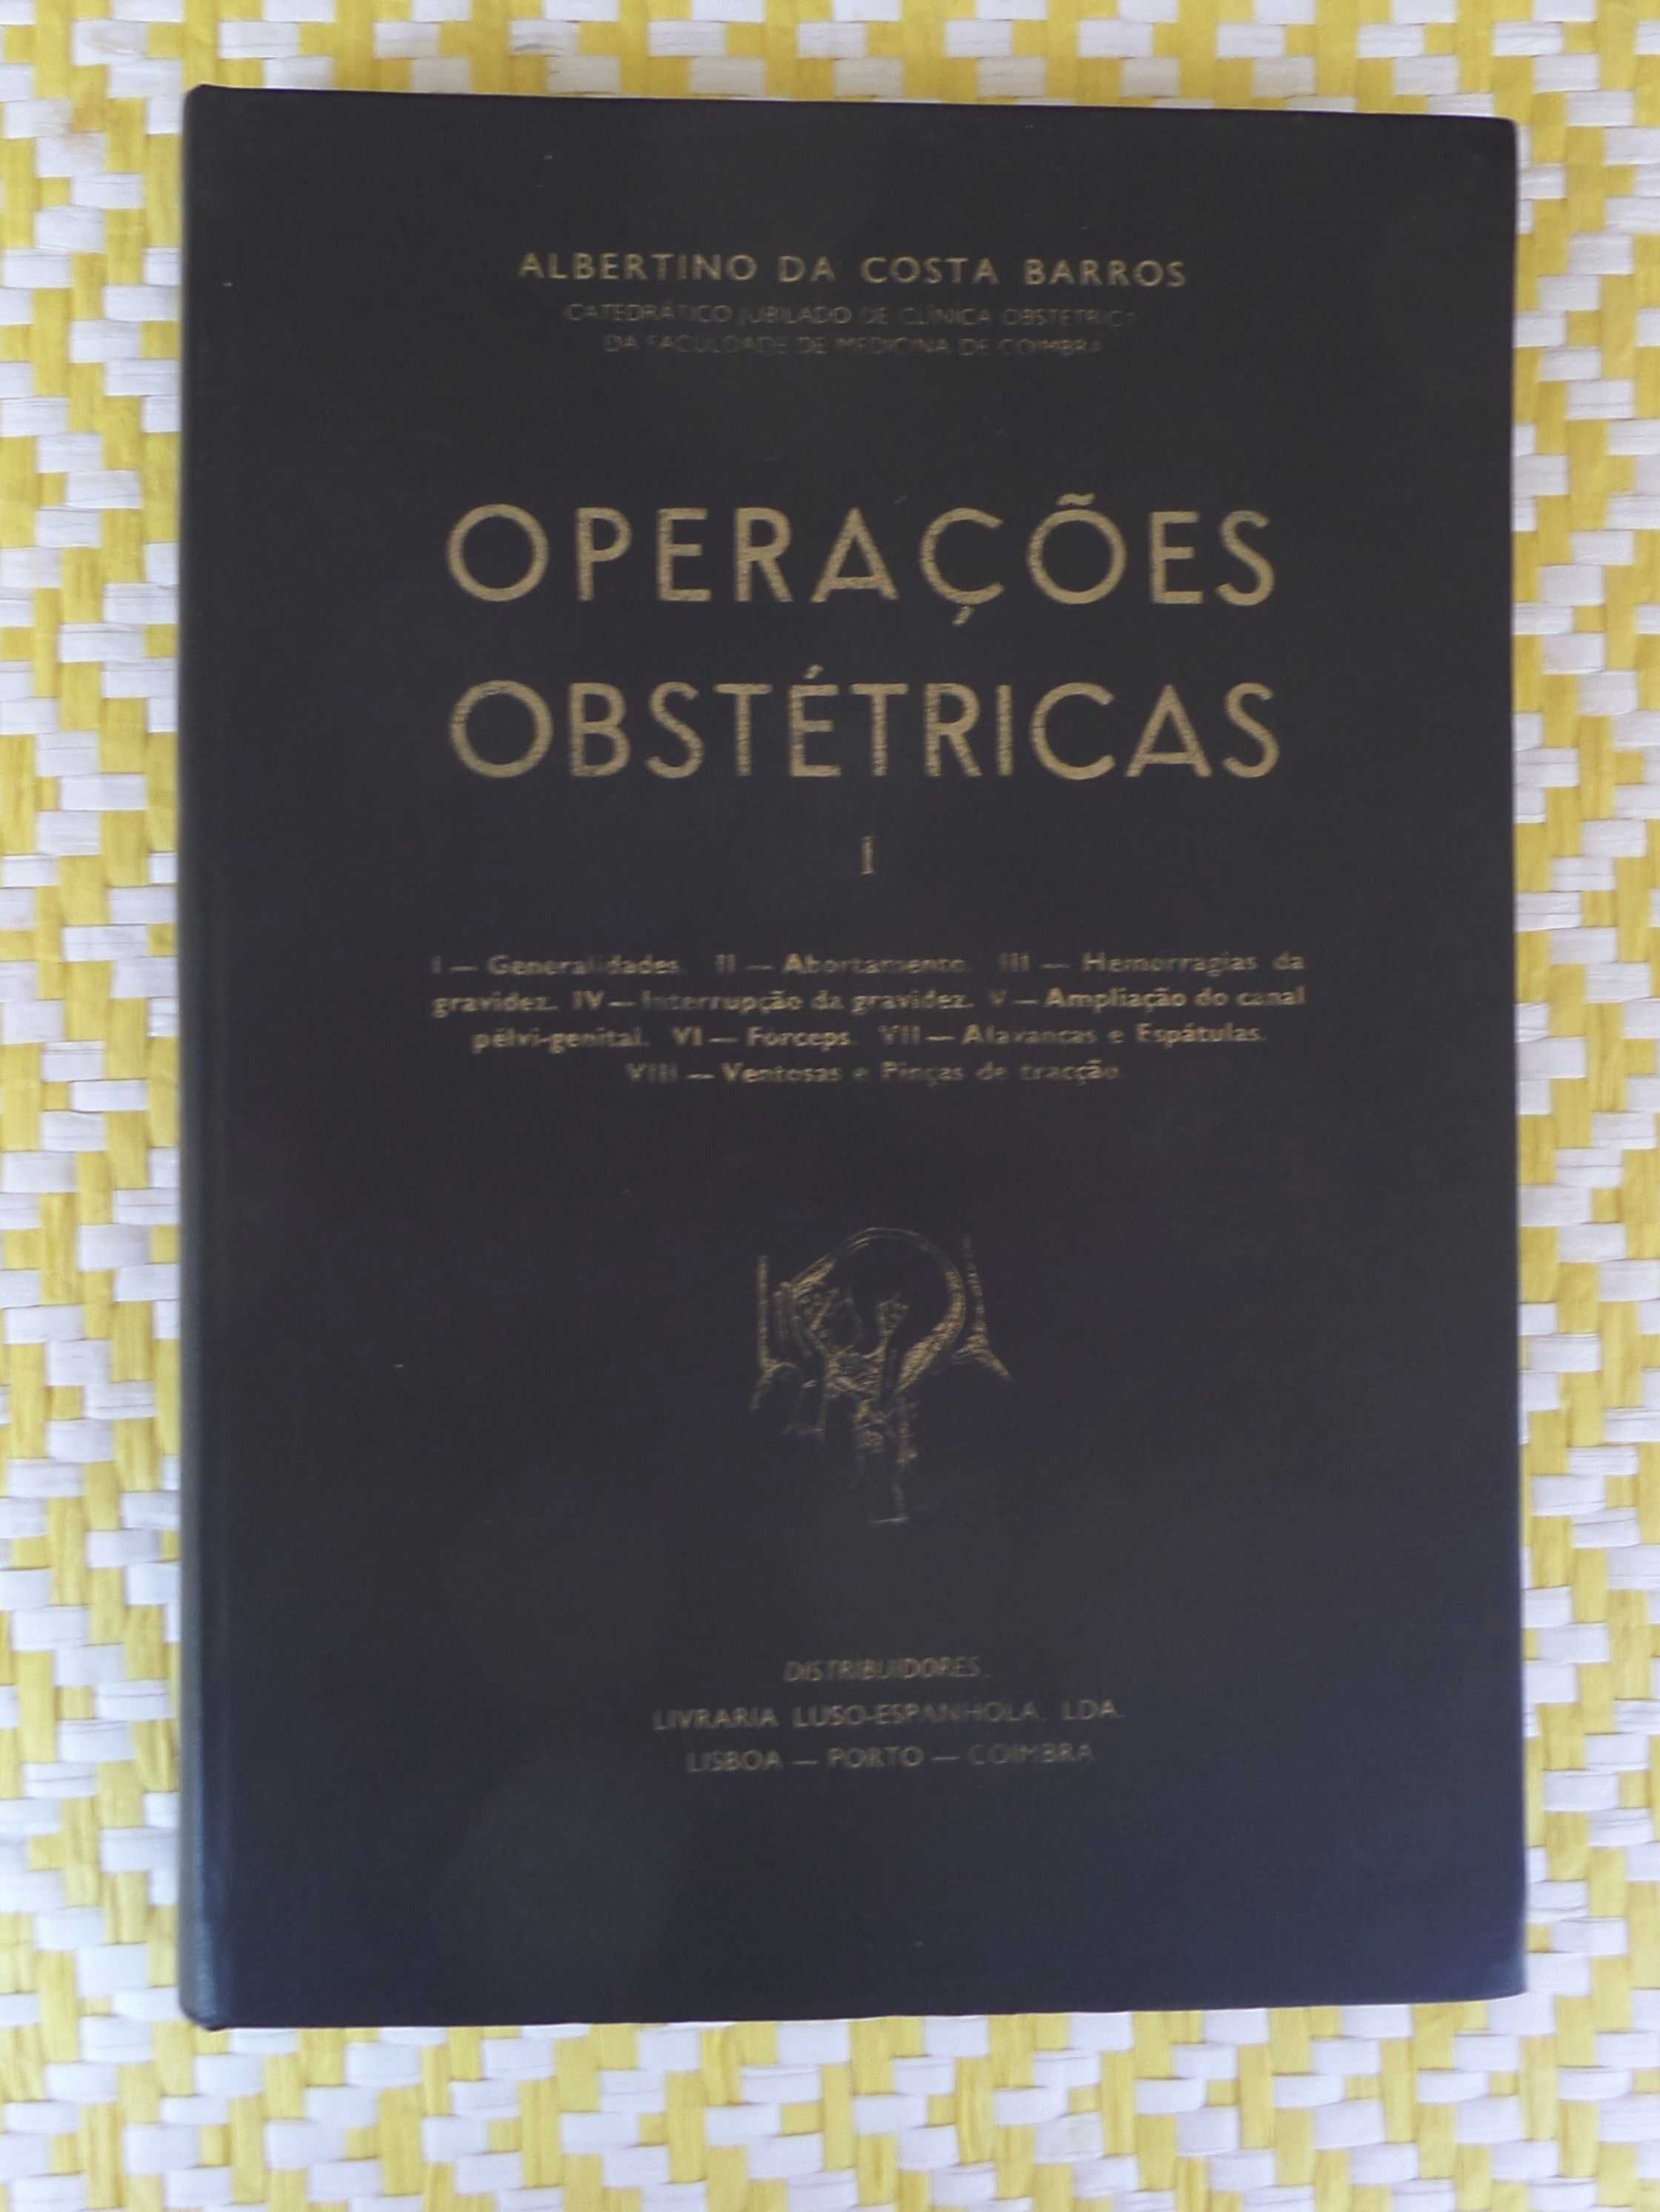 OPERAÇÕES OBSTÉTRICAS
Albertino da Costa Barros